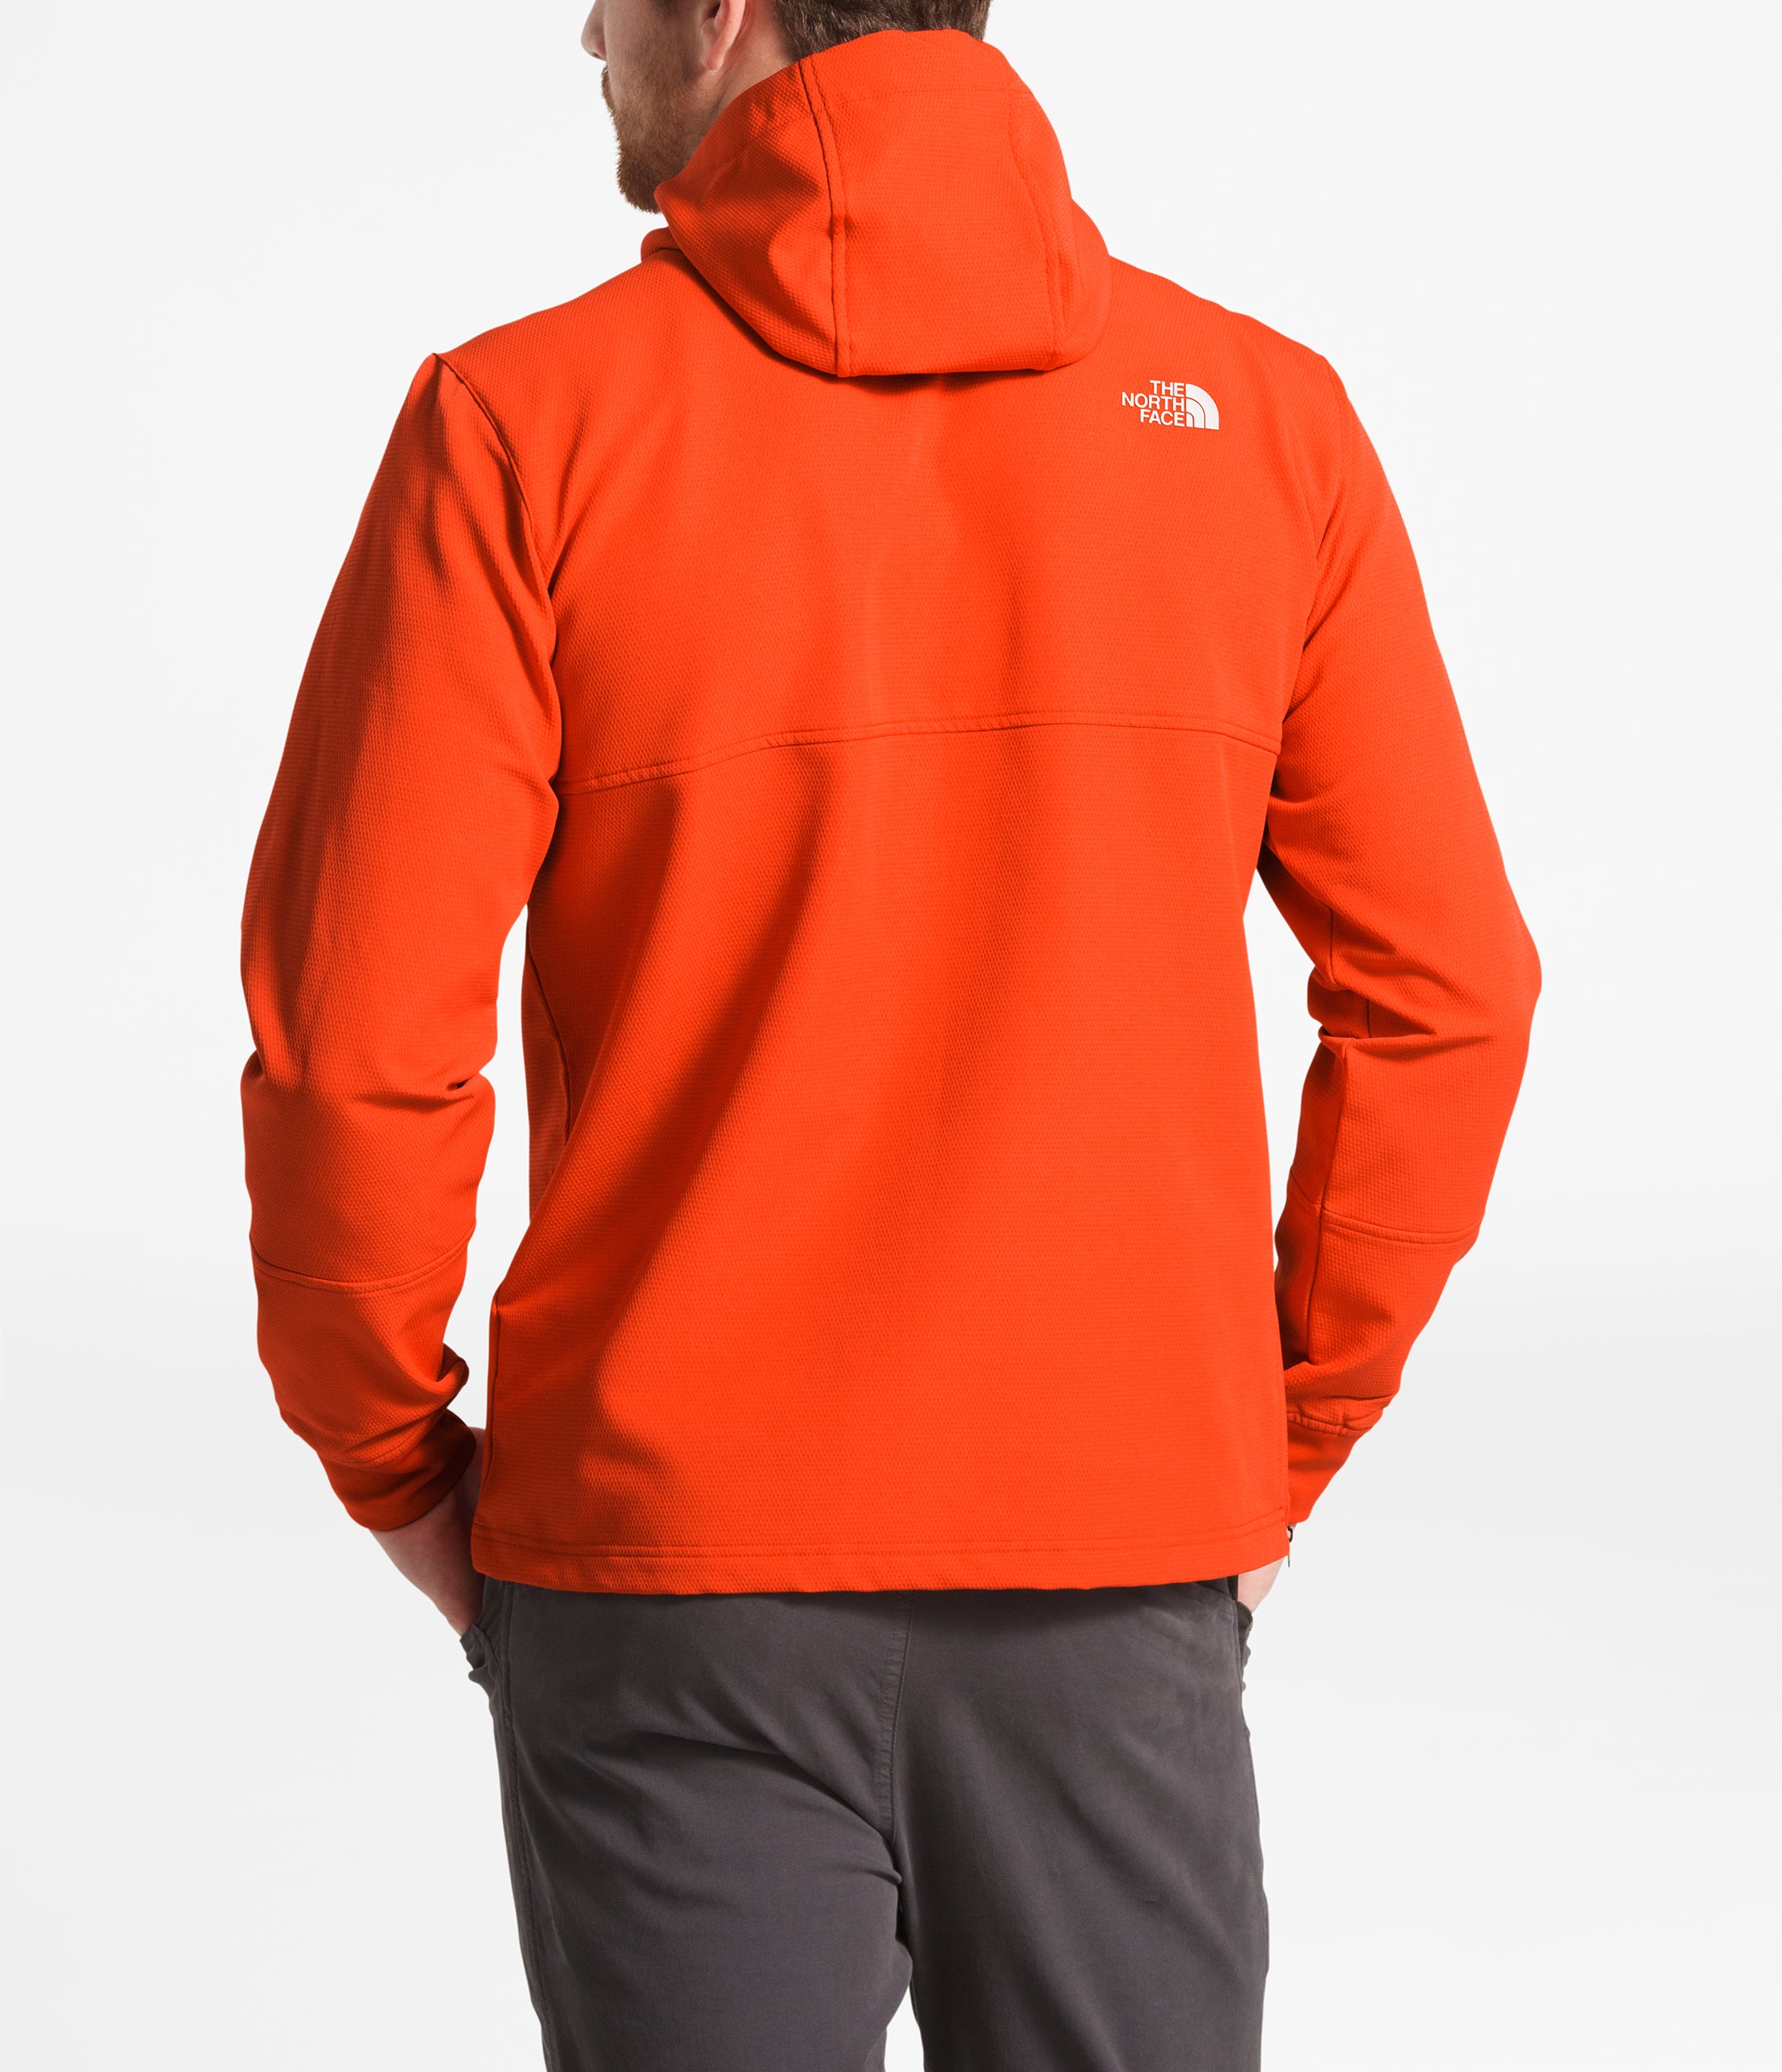 mens orange north face hoodie